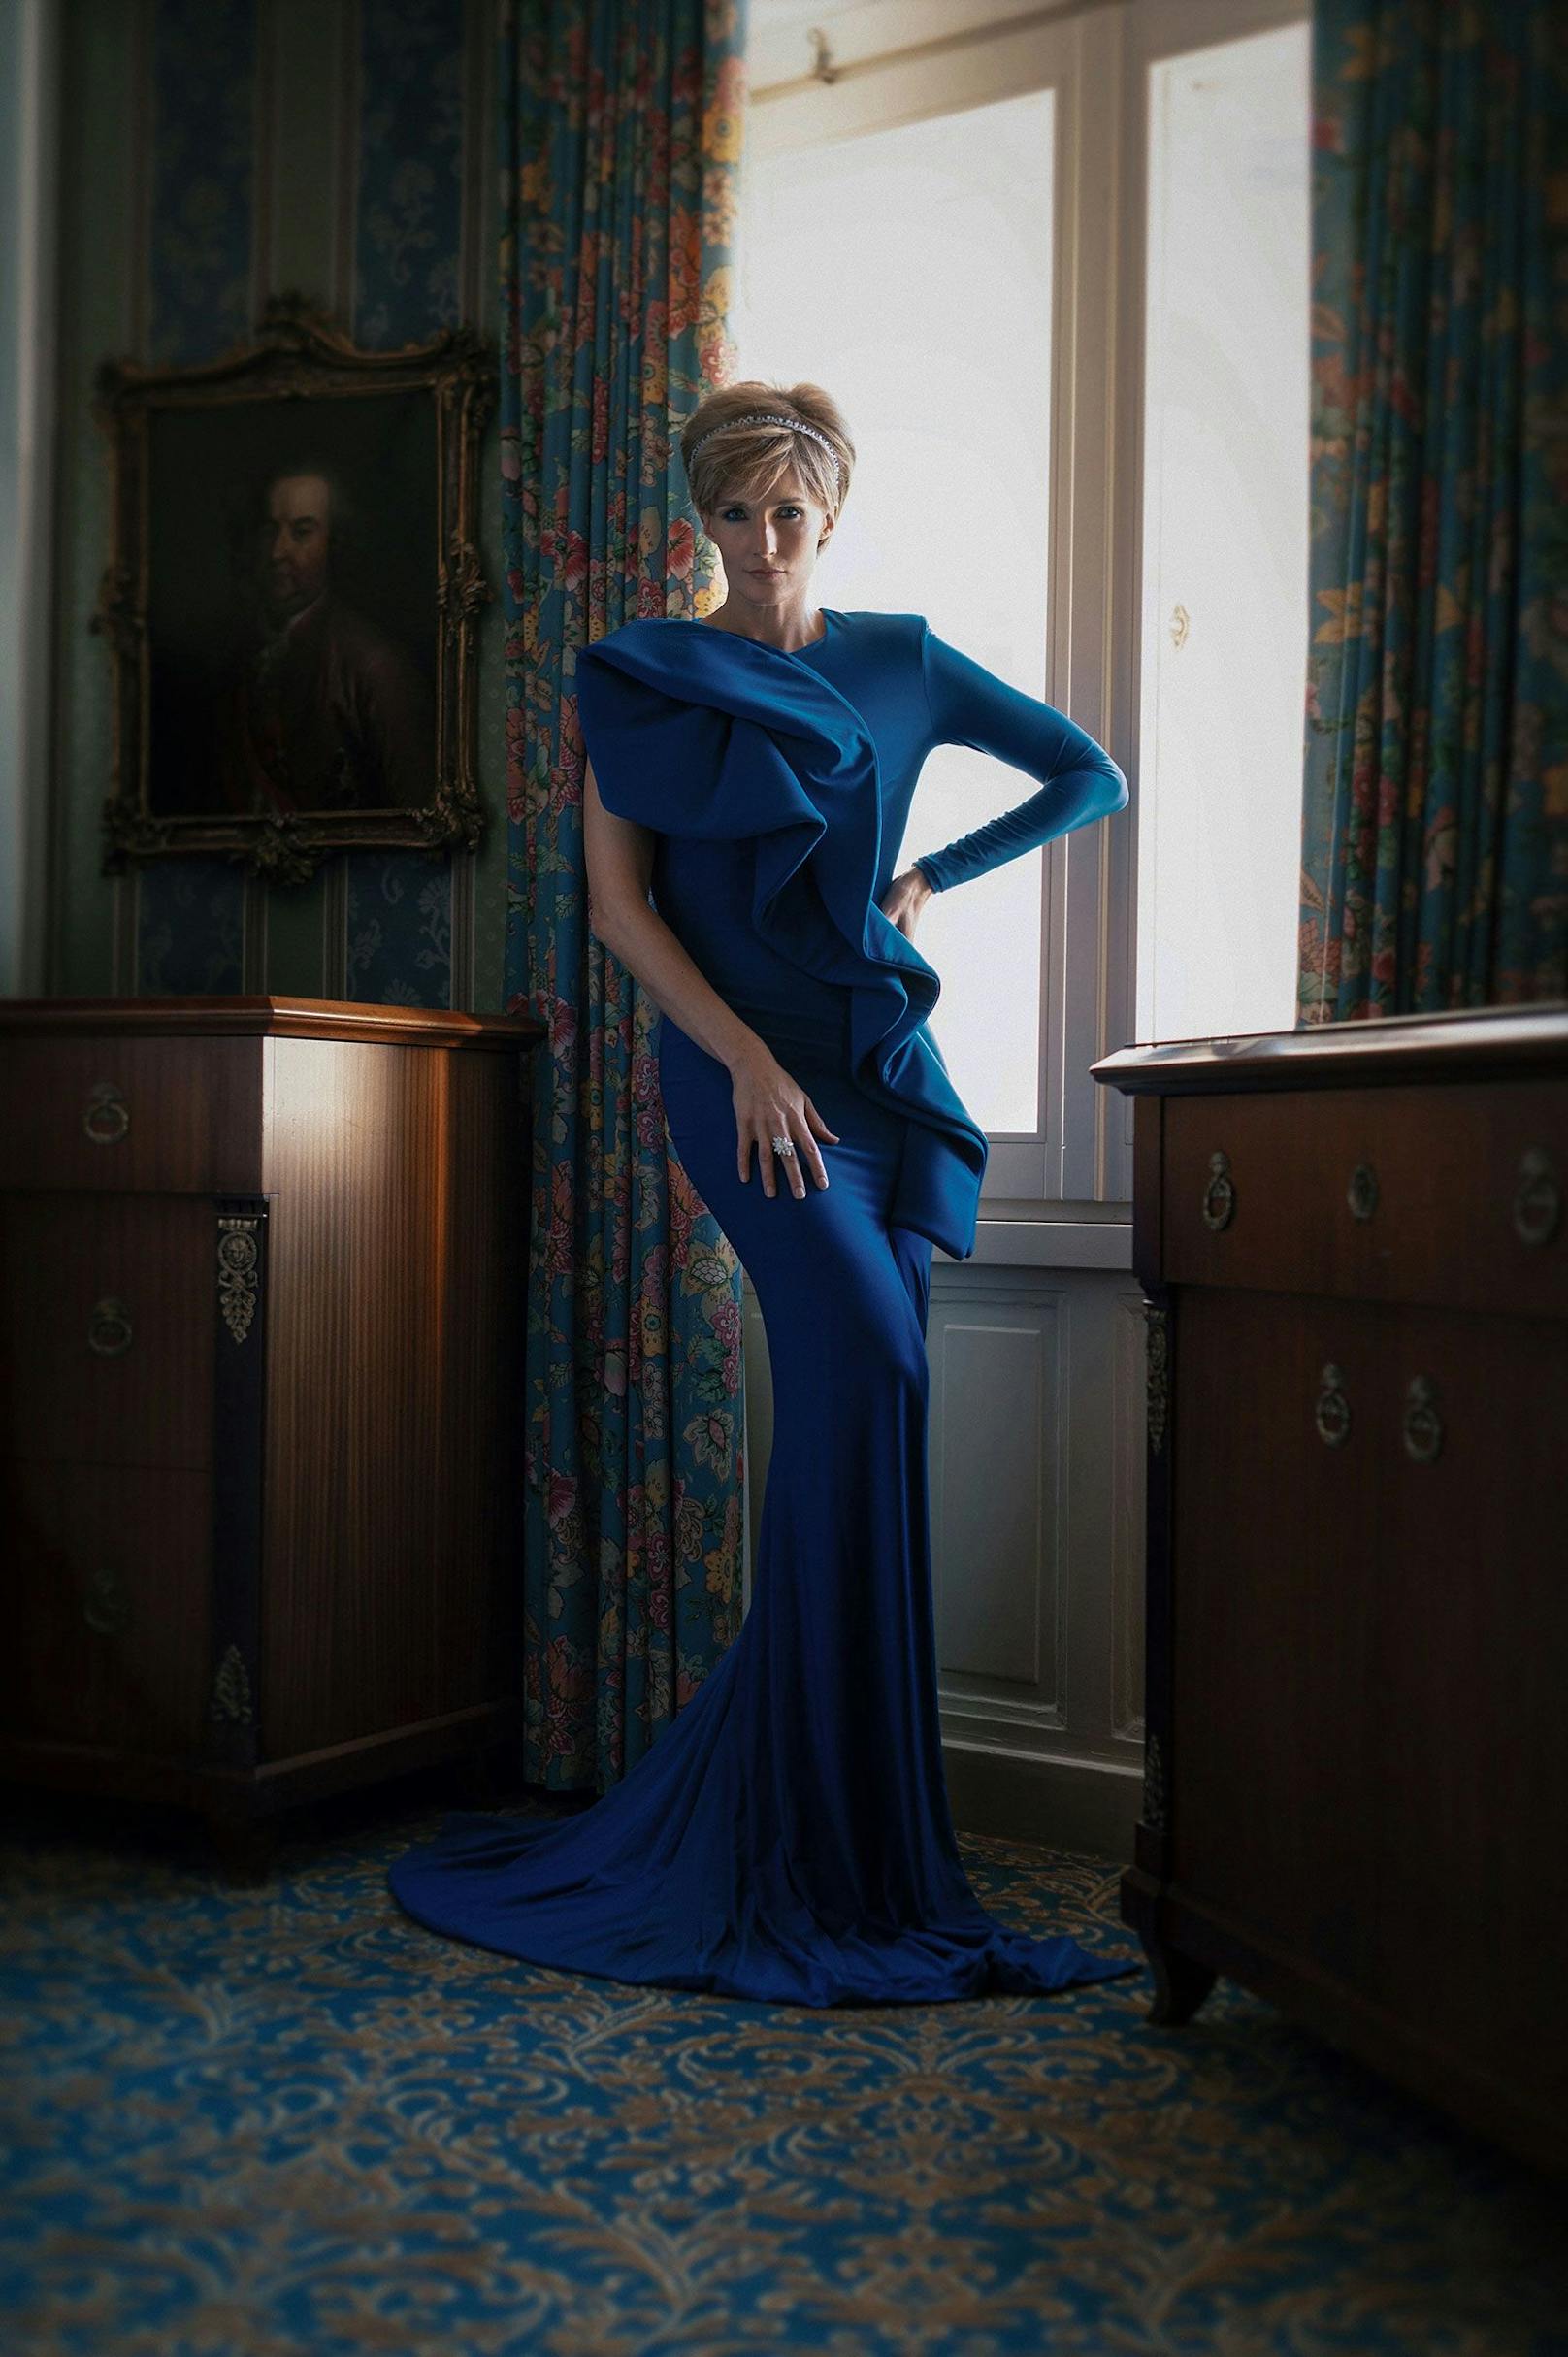 Das elegante Hotel Bristol in Wien wurde als Location für das "The Queen Of Hearts"-Fashion-Editorial gewählt. Patricia Kaiser begab sich auf die Spuren der unvergessenen Stilikone, Prinzessin Diana. 